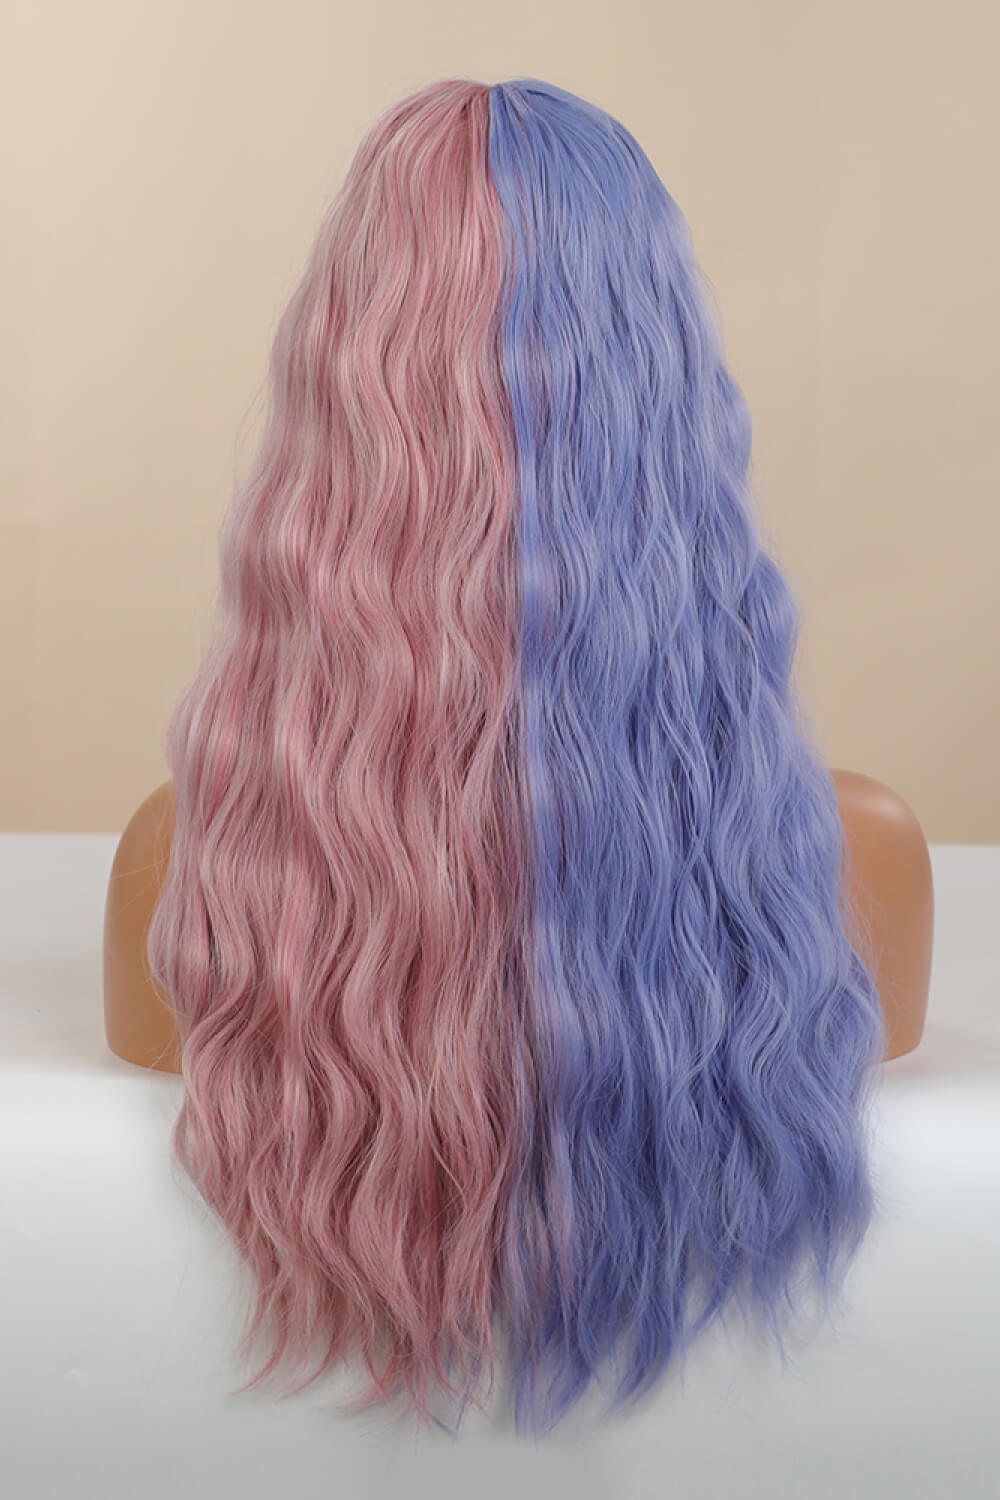 Hurshy 13 x 1" Full-Machine Wigs Synthetic Long Wave 26" in Blue/Pink Split Dye